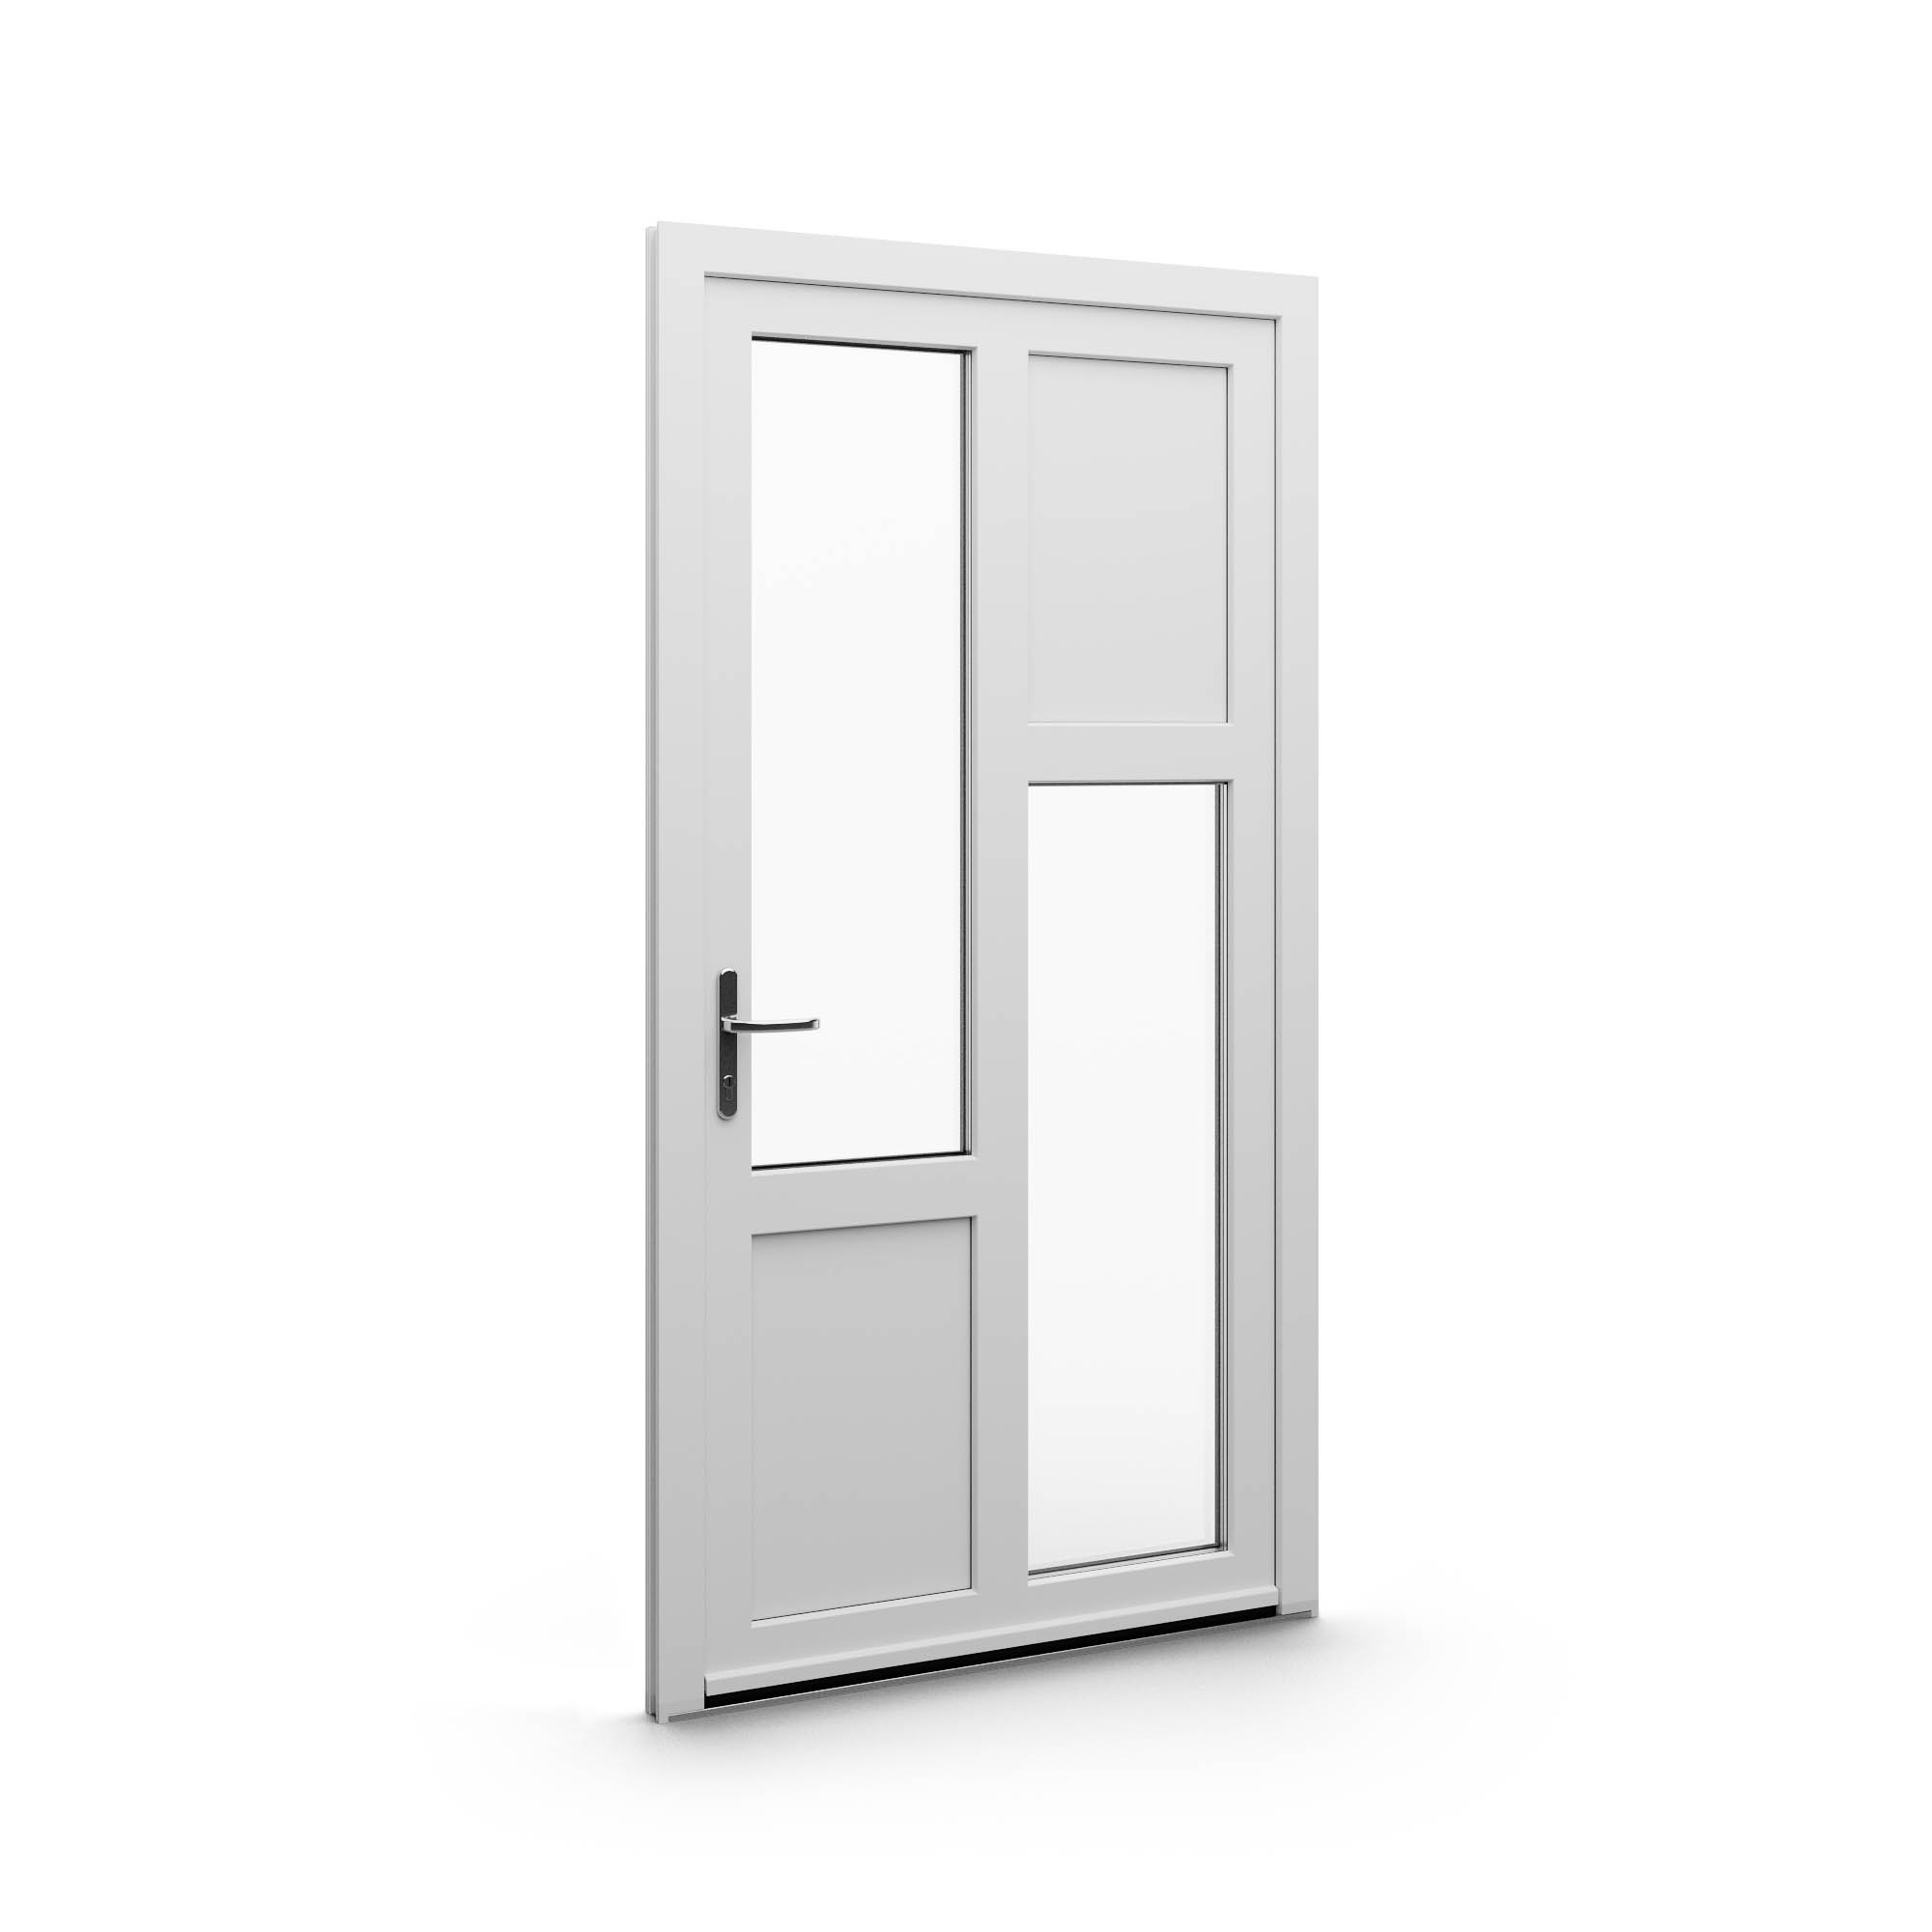 uPVC model doors